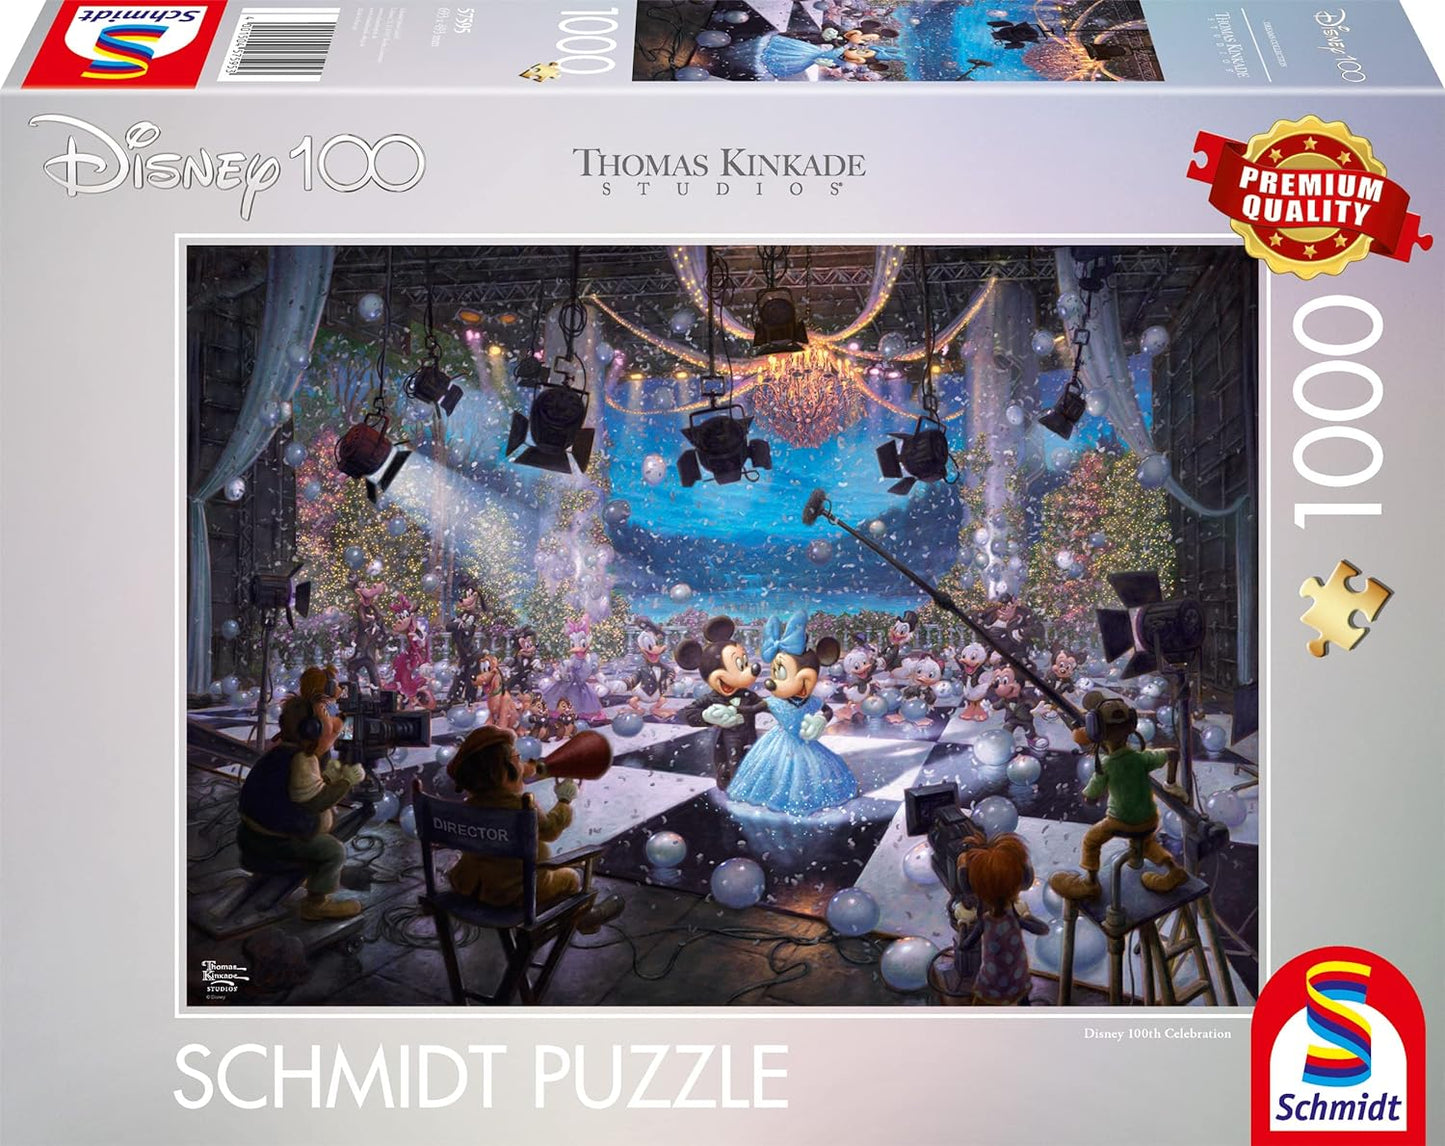 Schmidt - Thomas Kinkade: Disney 100 Years of Disney Mickey and Minnie - 1000 Piece Jigsaw Puzzle